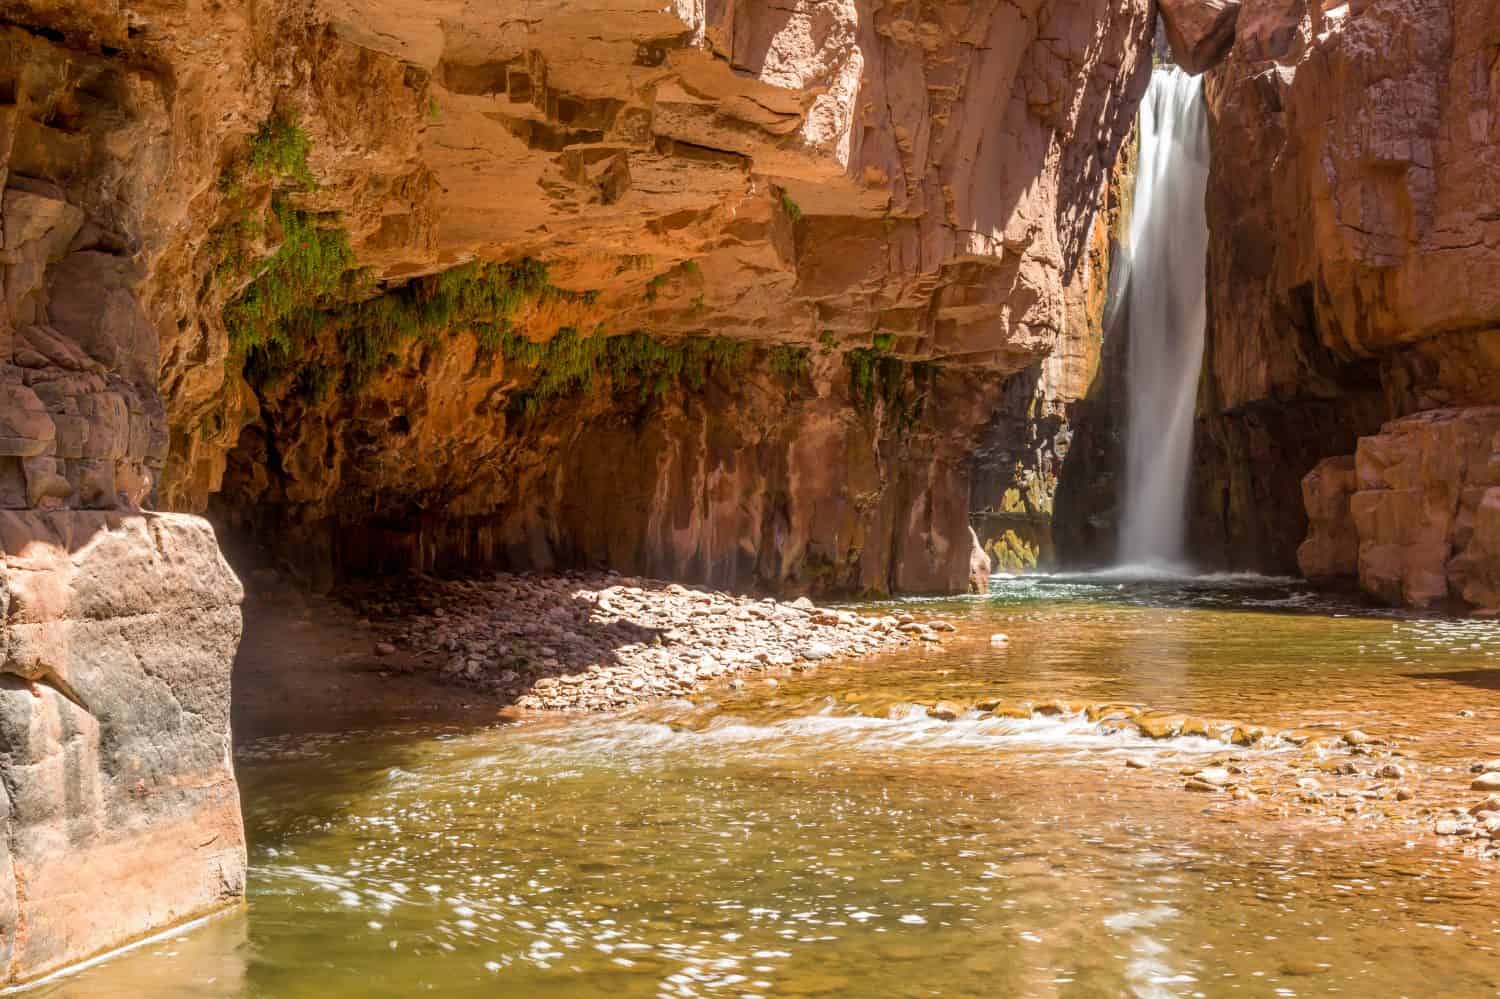 Cibecue Falls and Salt River landscapes in Arizona